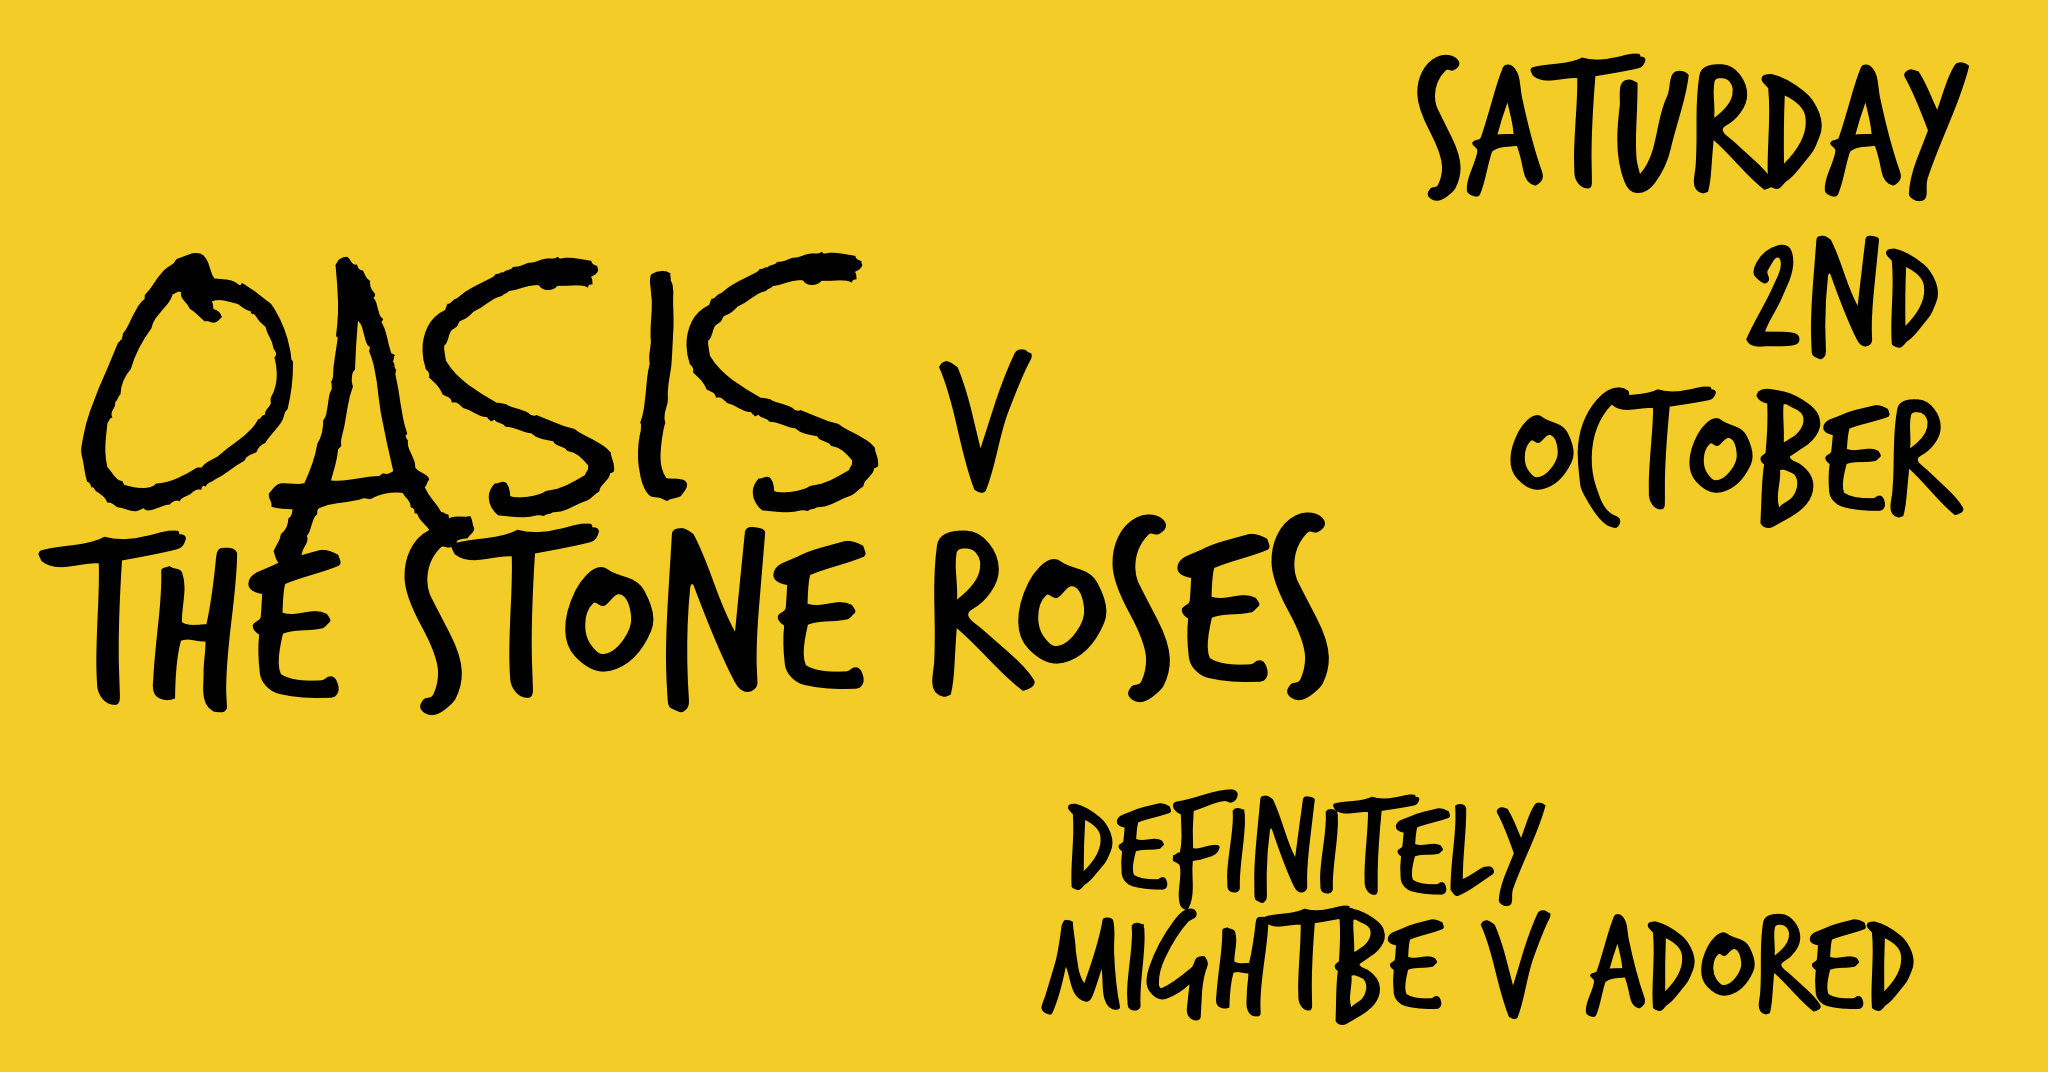 Oasis v Stone Roses